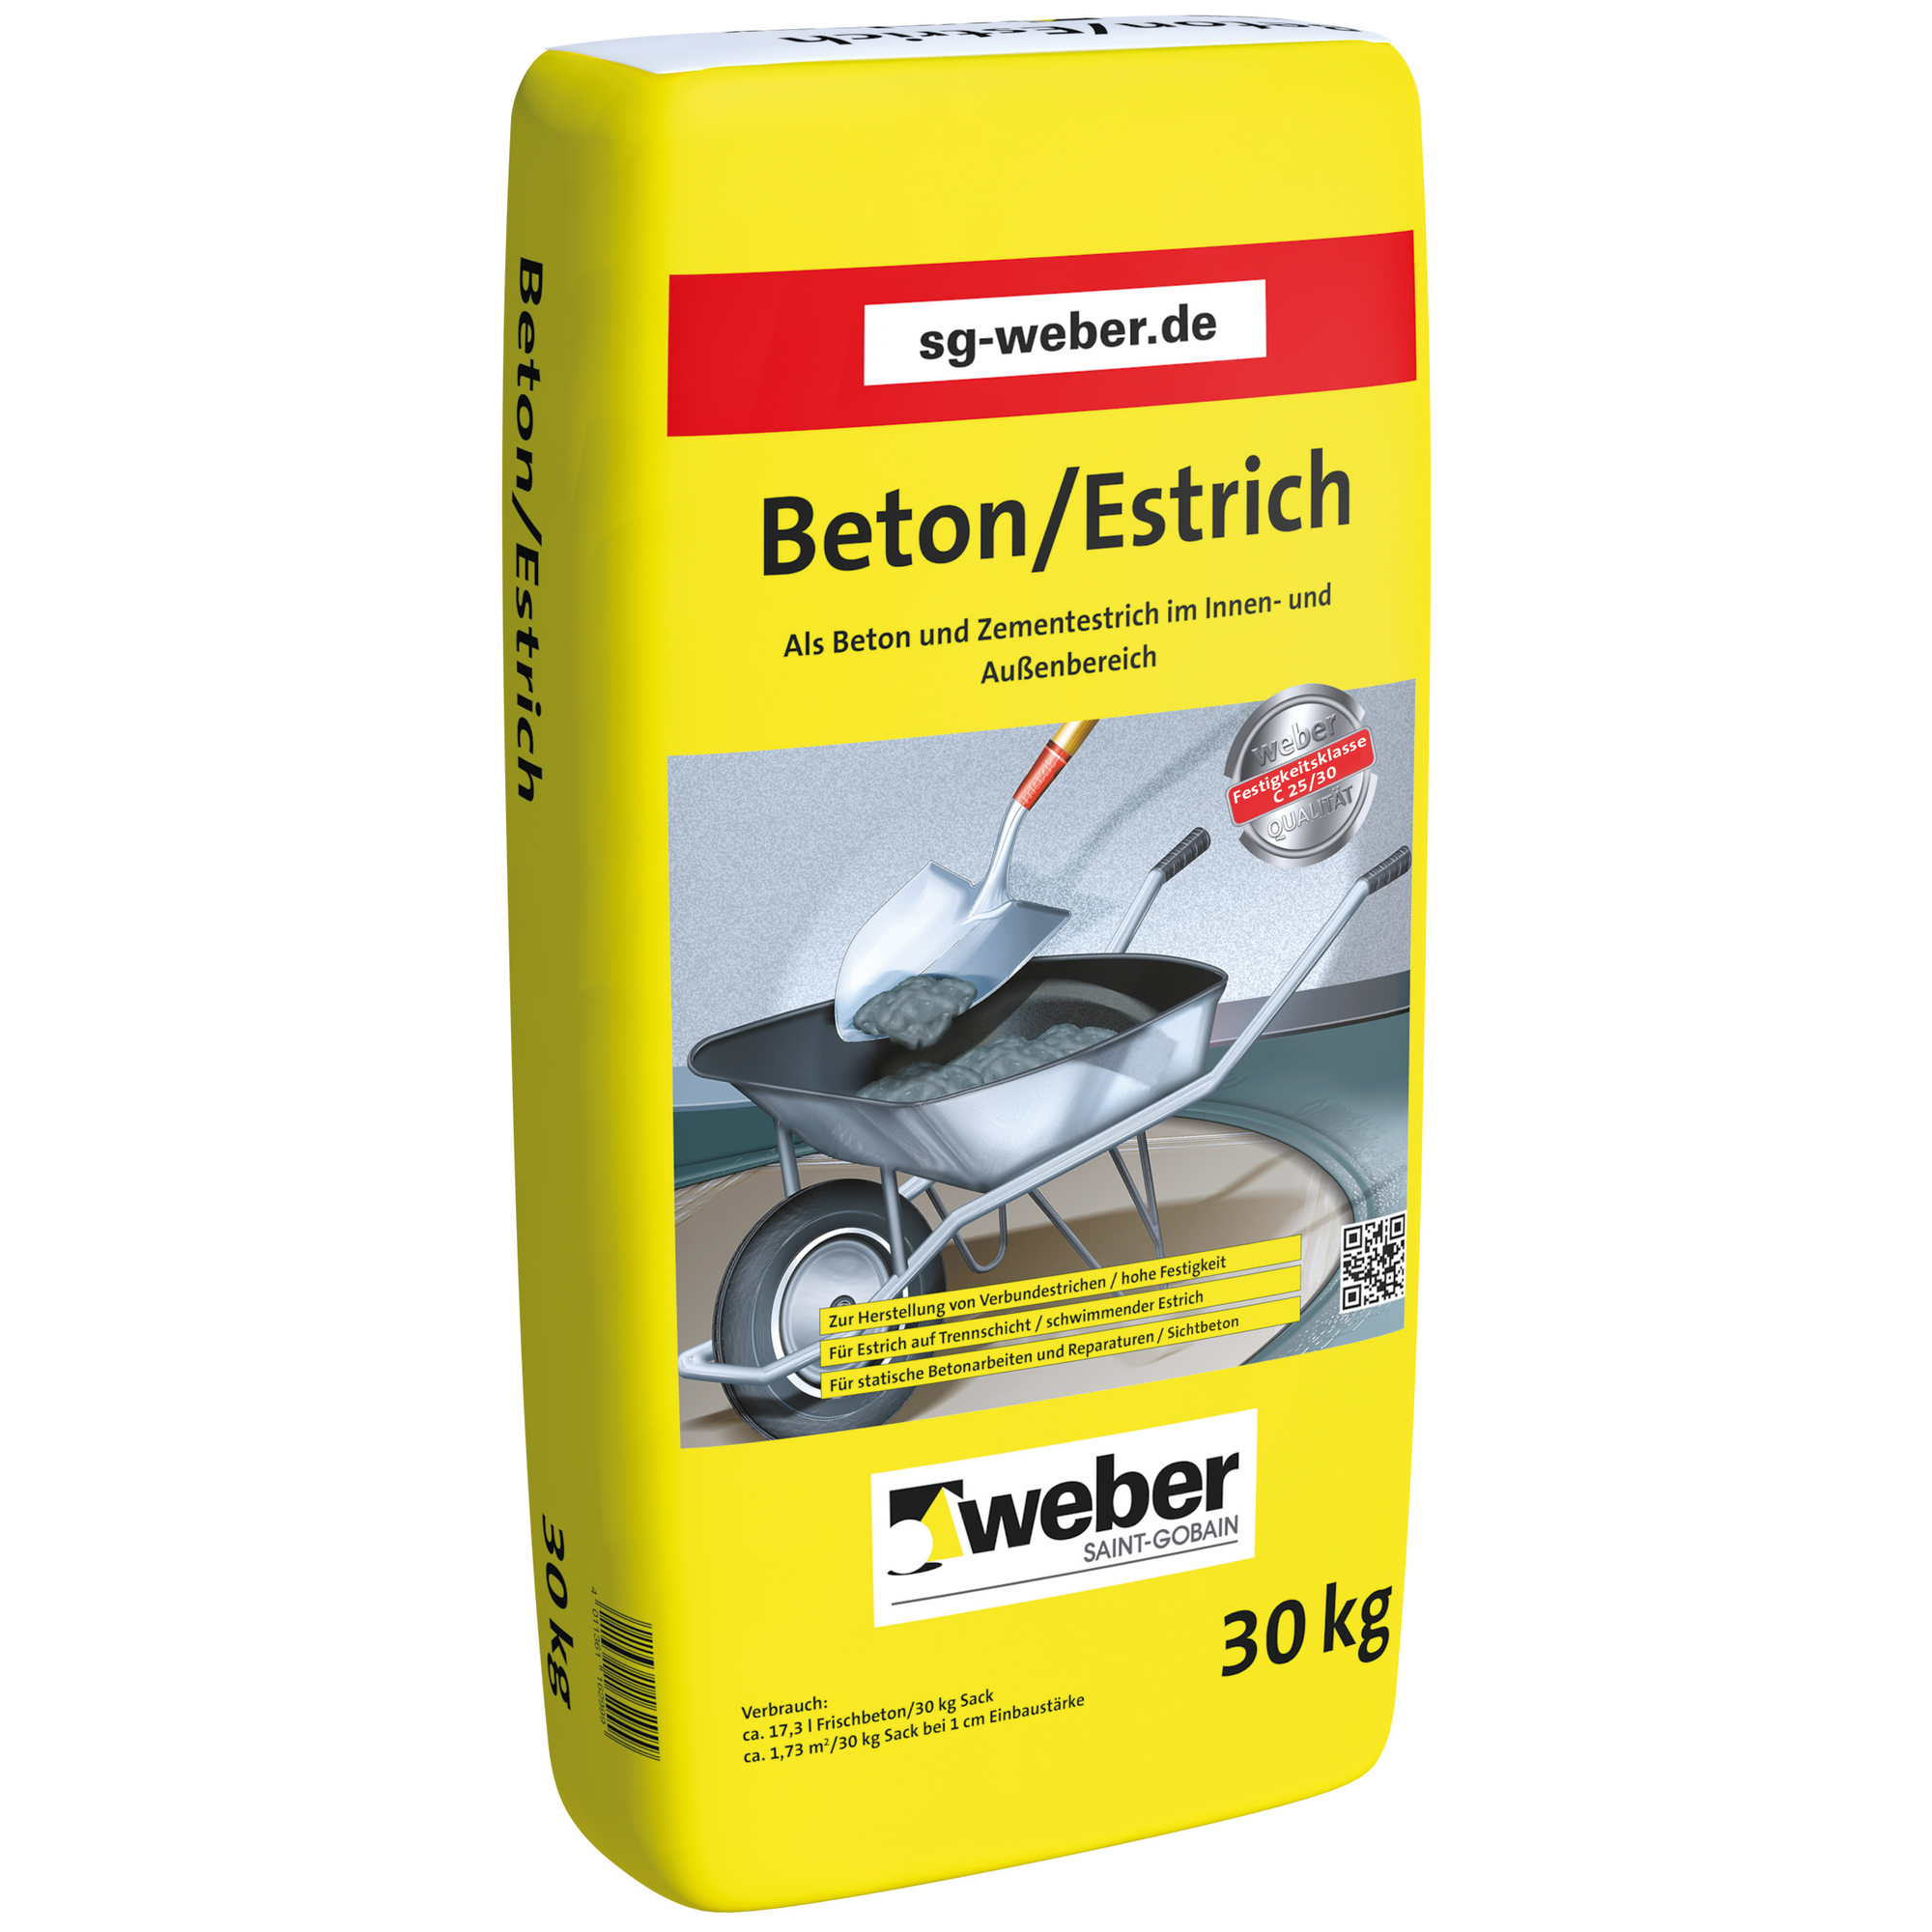 Beton/Estrich 30 kg + product picture